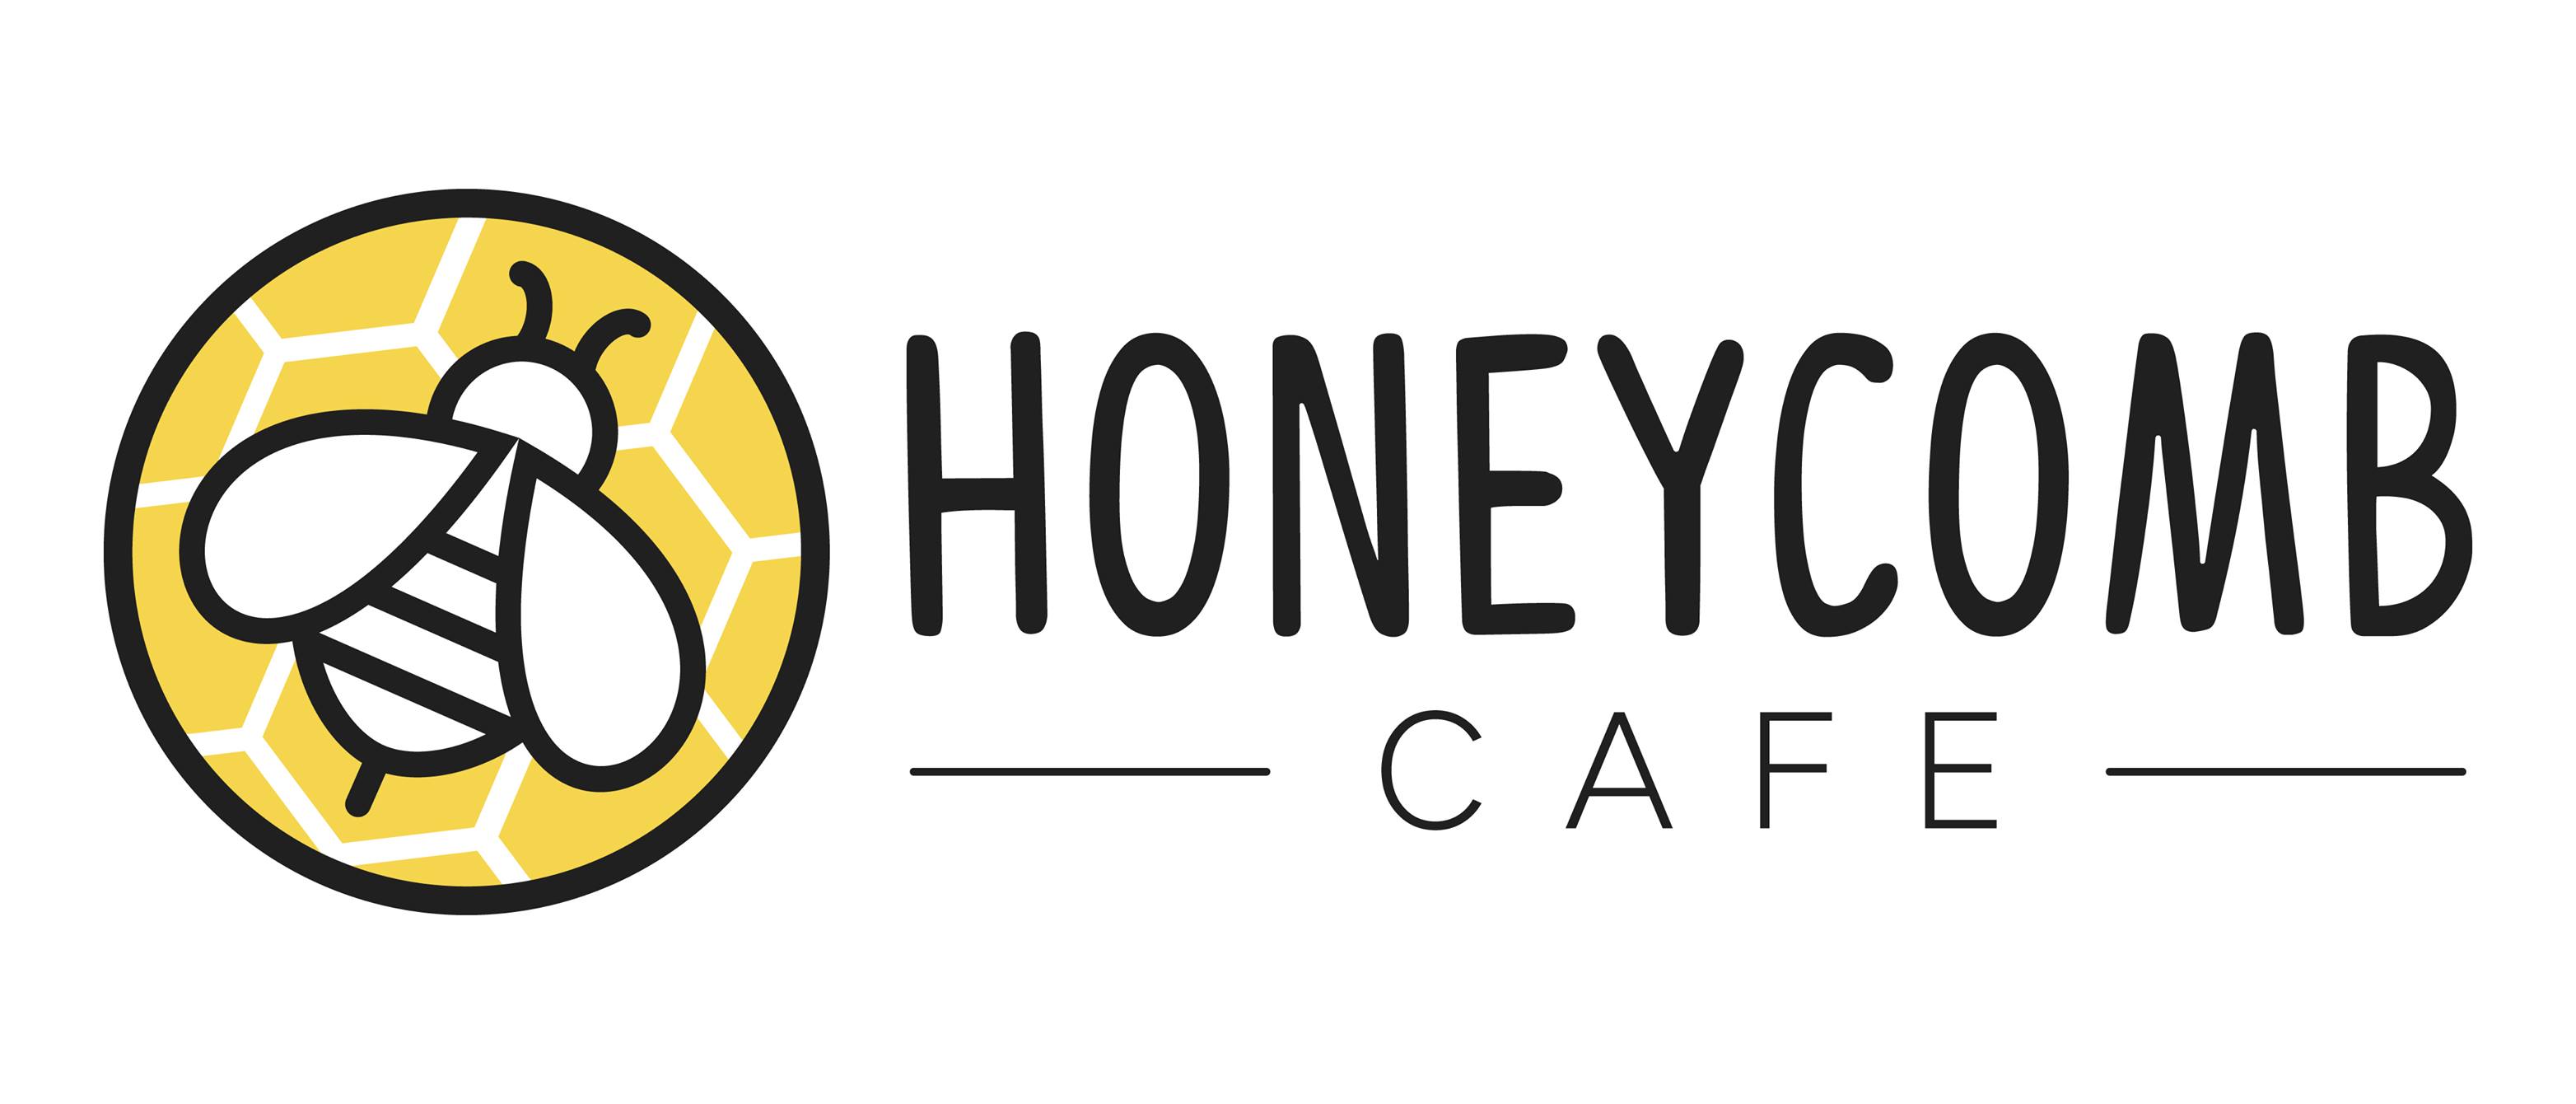 Honeycomb Cafe logo